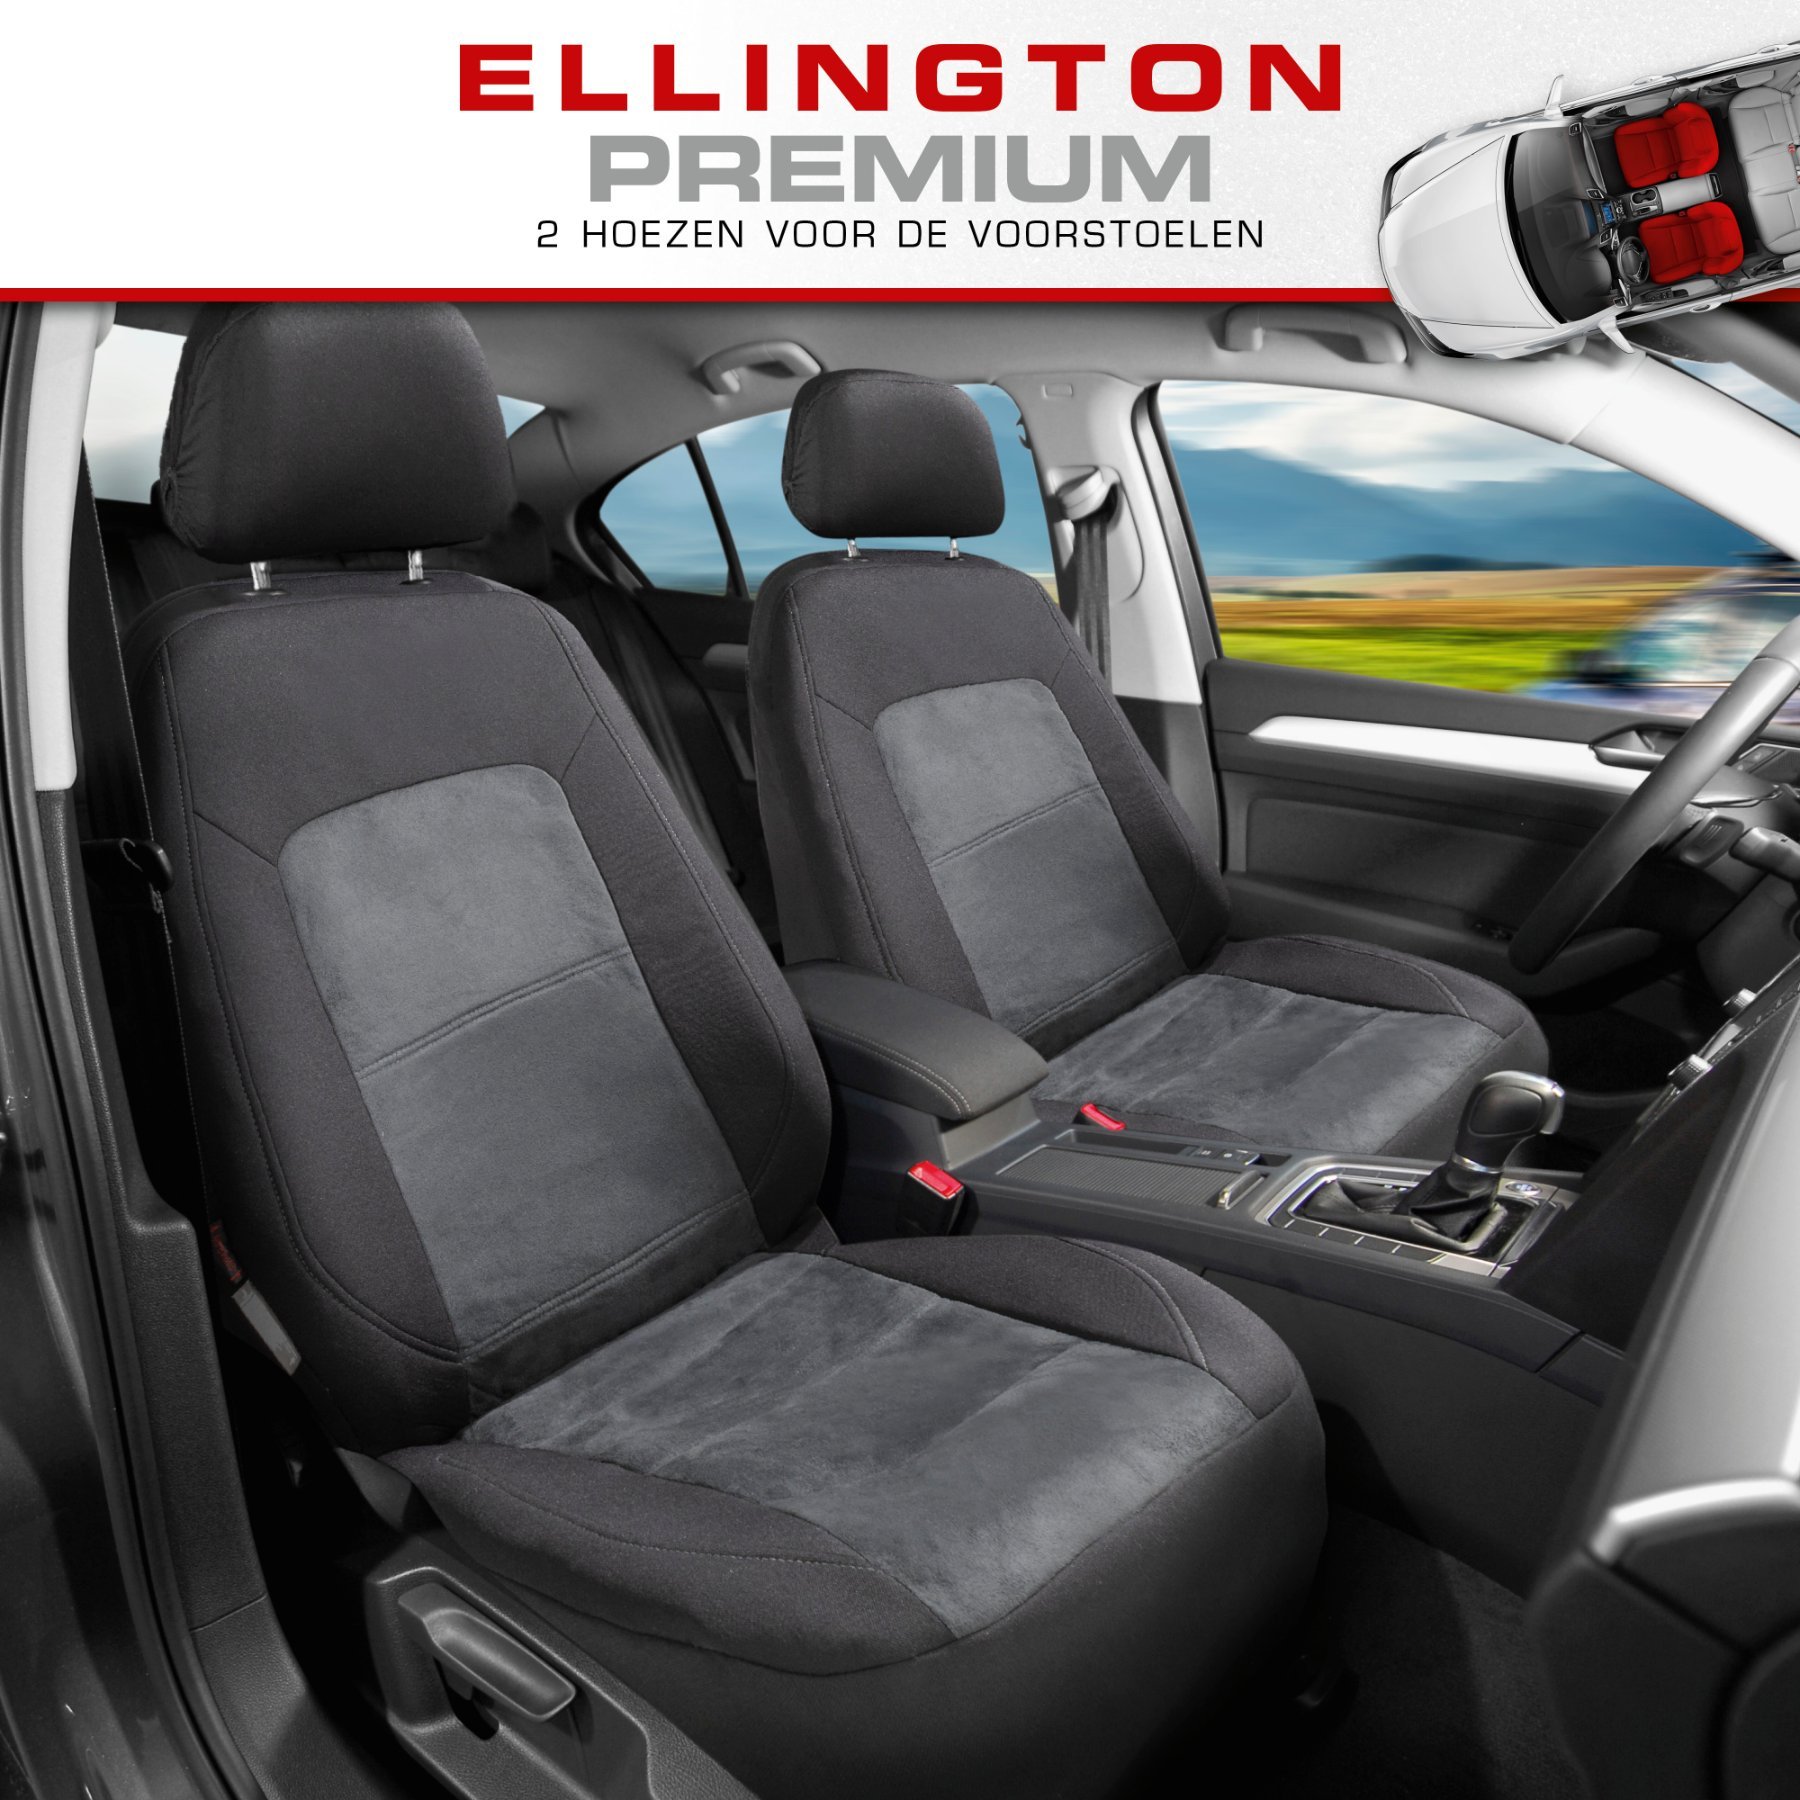 Premium autozetelhoezen Ellington met rits, ZIPP-IT zetelhoezen, 2 voorzetelhoezen zwart/grijs 11864